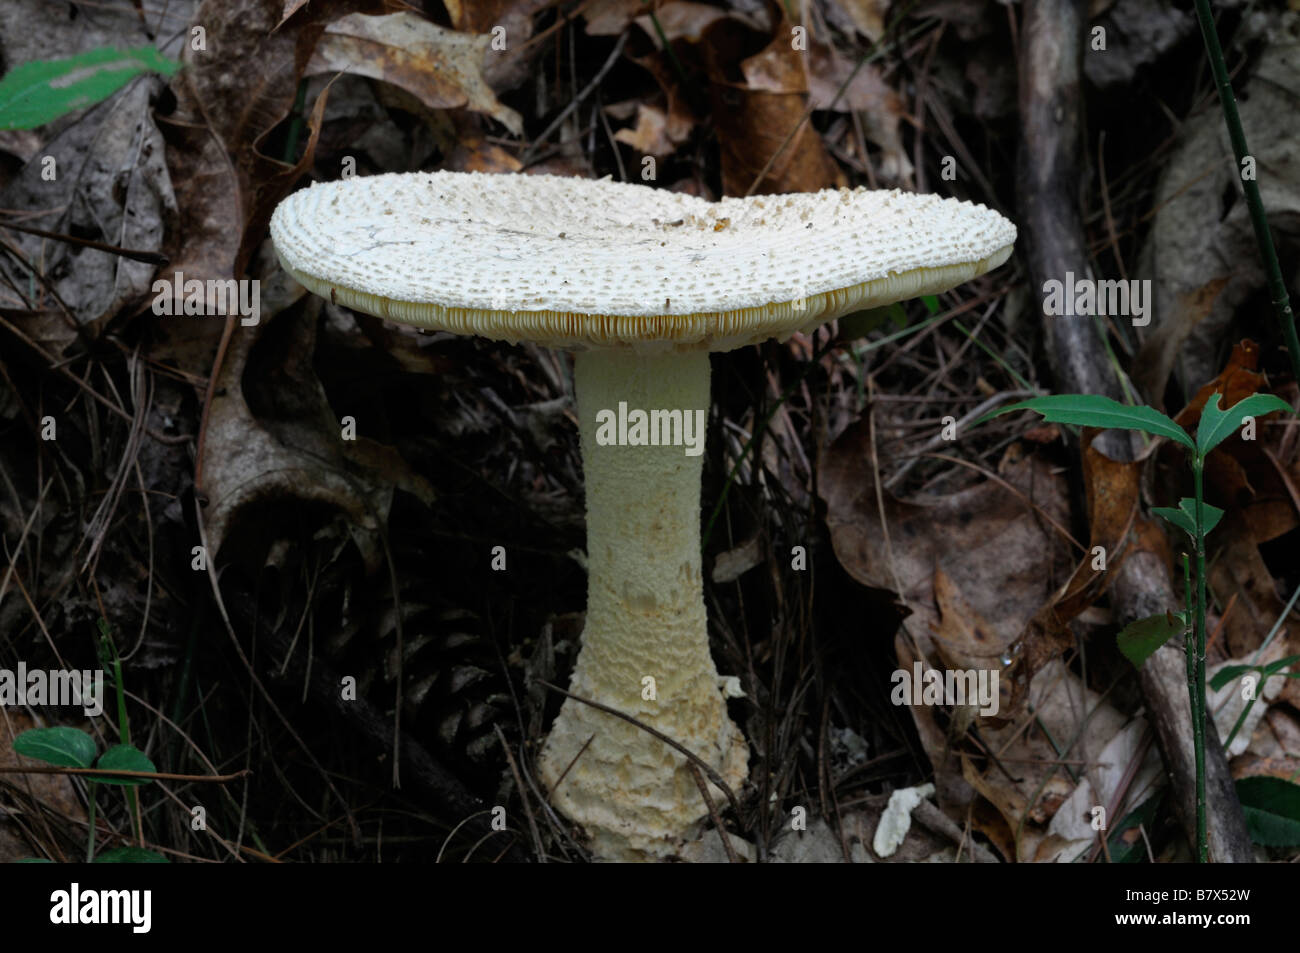 Amanita sp Var giftige vergiften giftig weißen Pilz Pilz Nahaufnahme Detail ungenießbar Gefahr gefährlich Stockfoto